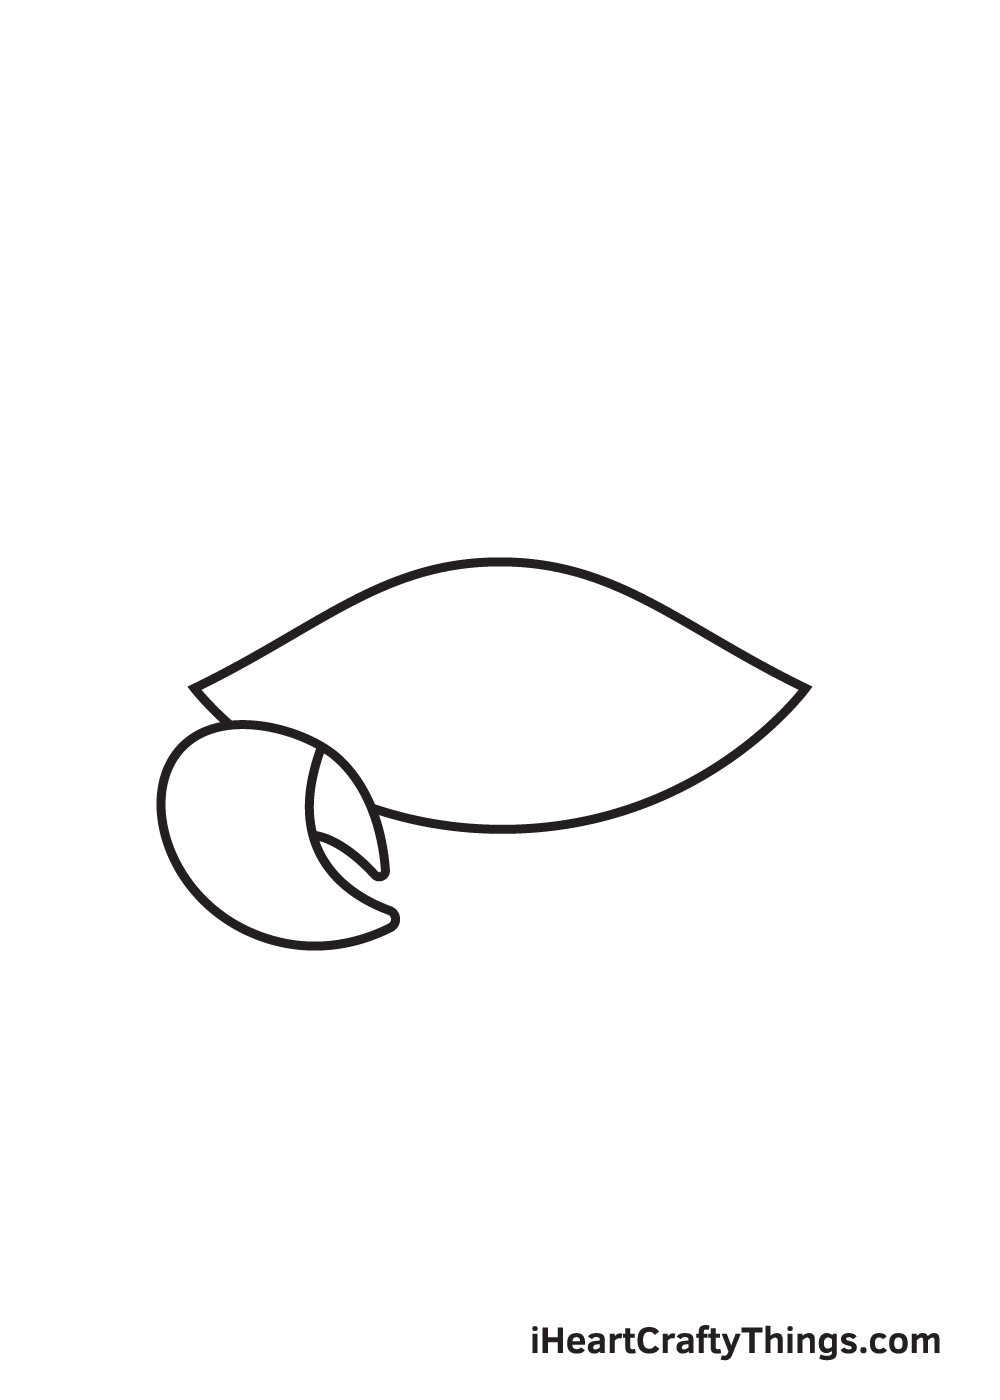 Crab DRAWING – STEP 2 - Hướng dẫn chi tiết cách vẽ con cua đơn giản với 9 bước cơ bản